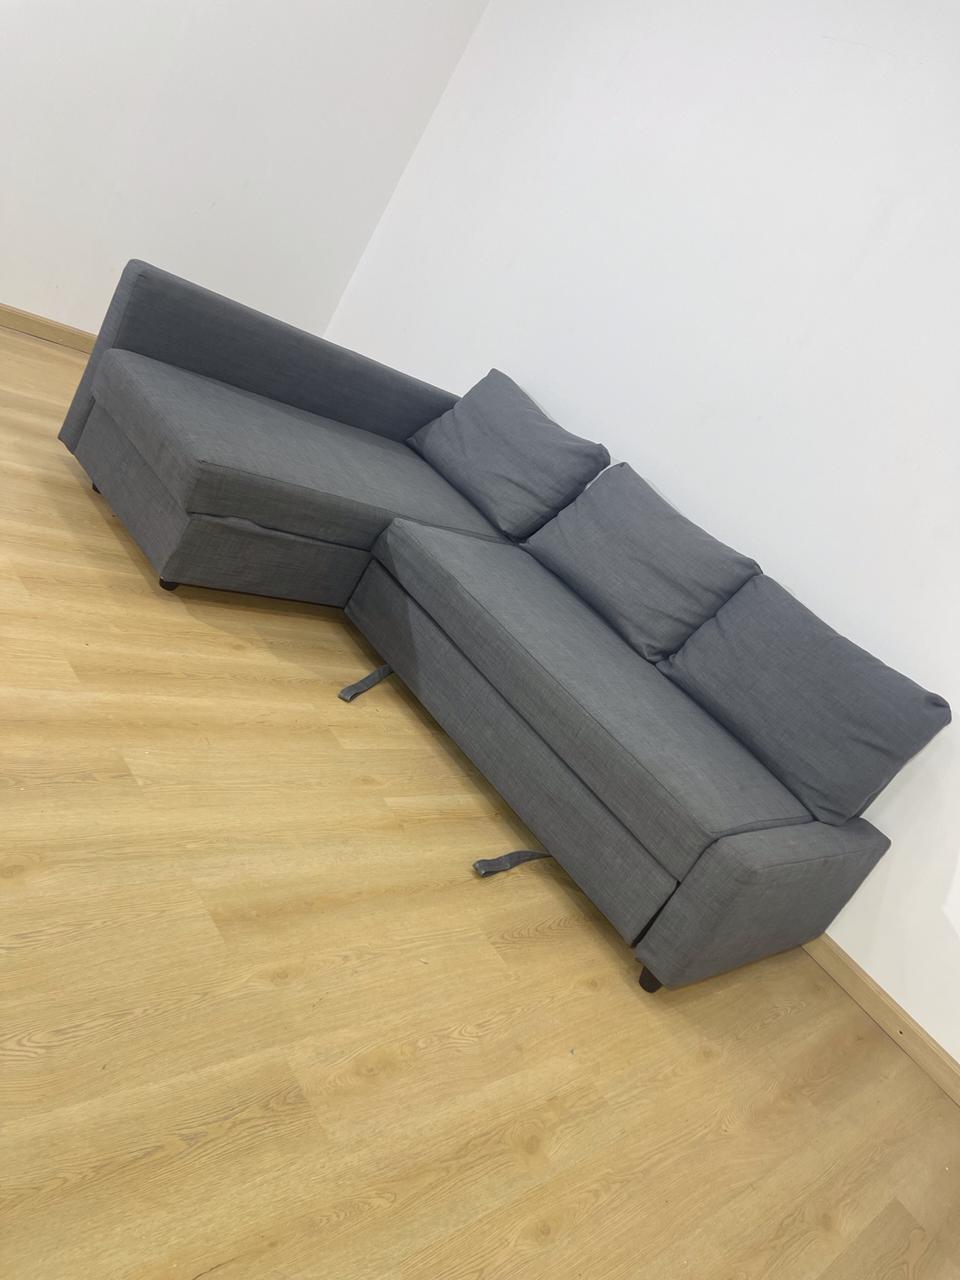 IKEA FRIHETEN L shape sofa bed